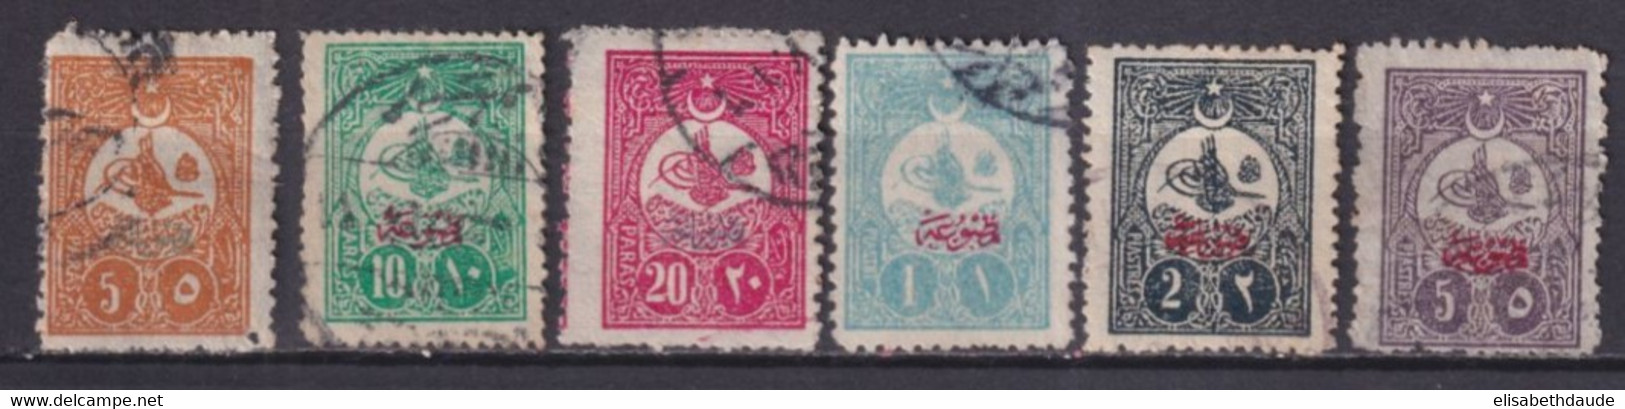 TURQUIE - 1908 - SERIE COMPLETE JOURNAUX YVERT N°35/40 OBLITERES - COTE = 40 EUR - Used Stamps